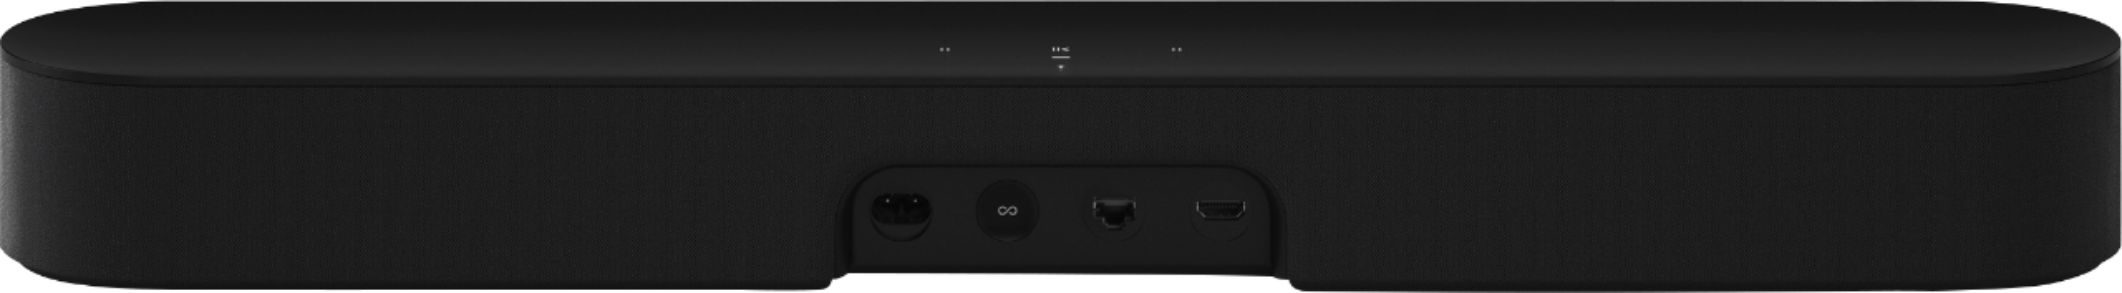 Back View: Bose - Soundbar Universal Remote - Black